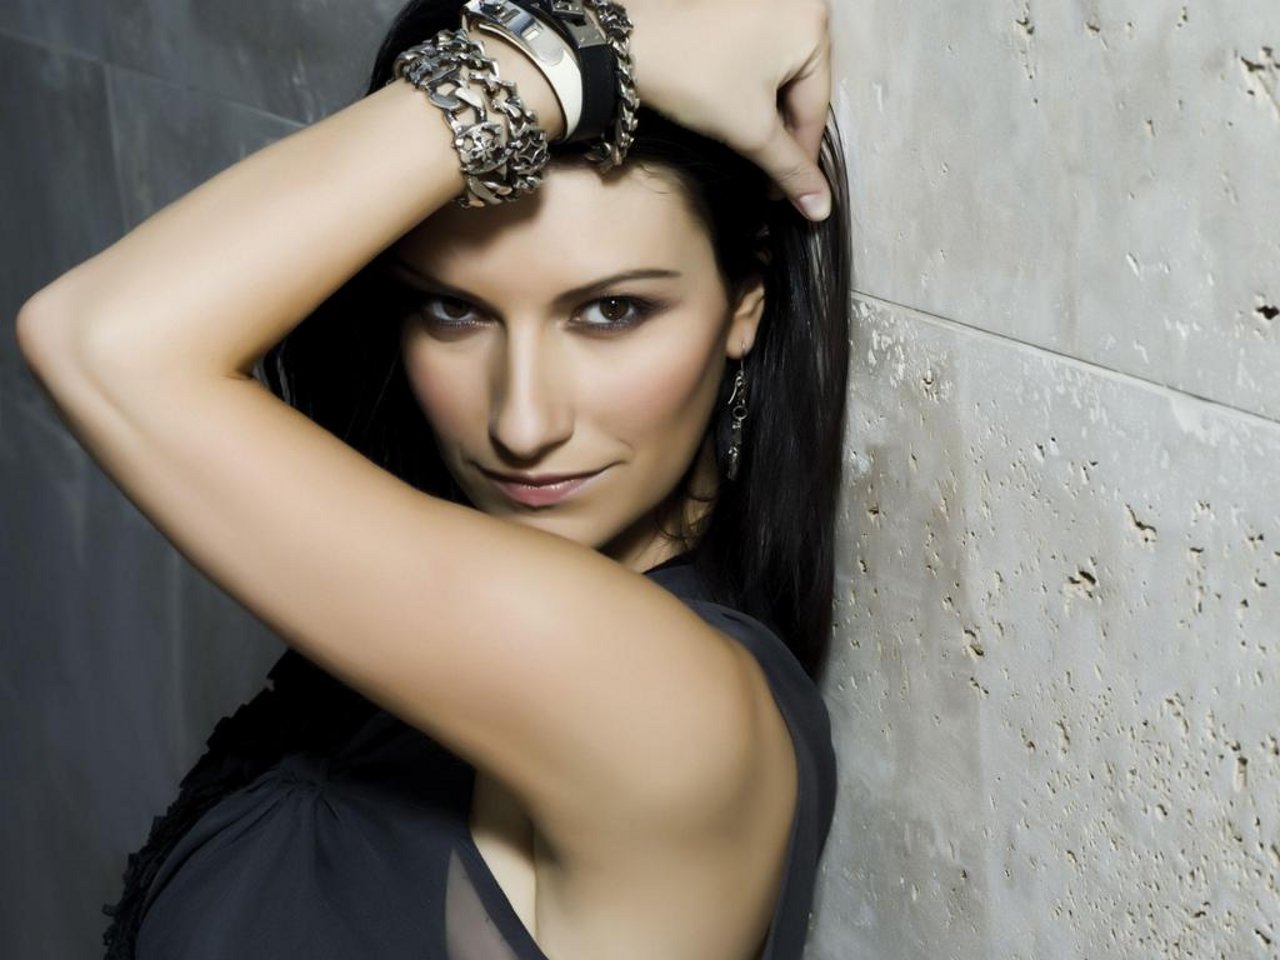 Laura Pausini dopo il successo americano tornerà in Italia per raduno suoi fan